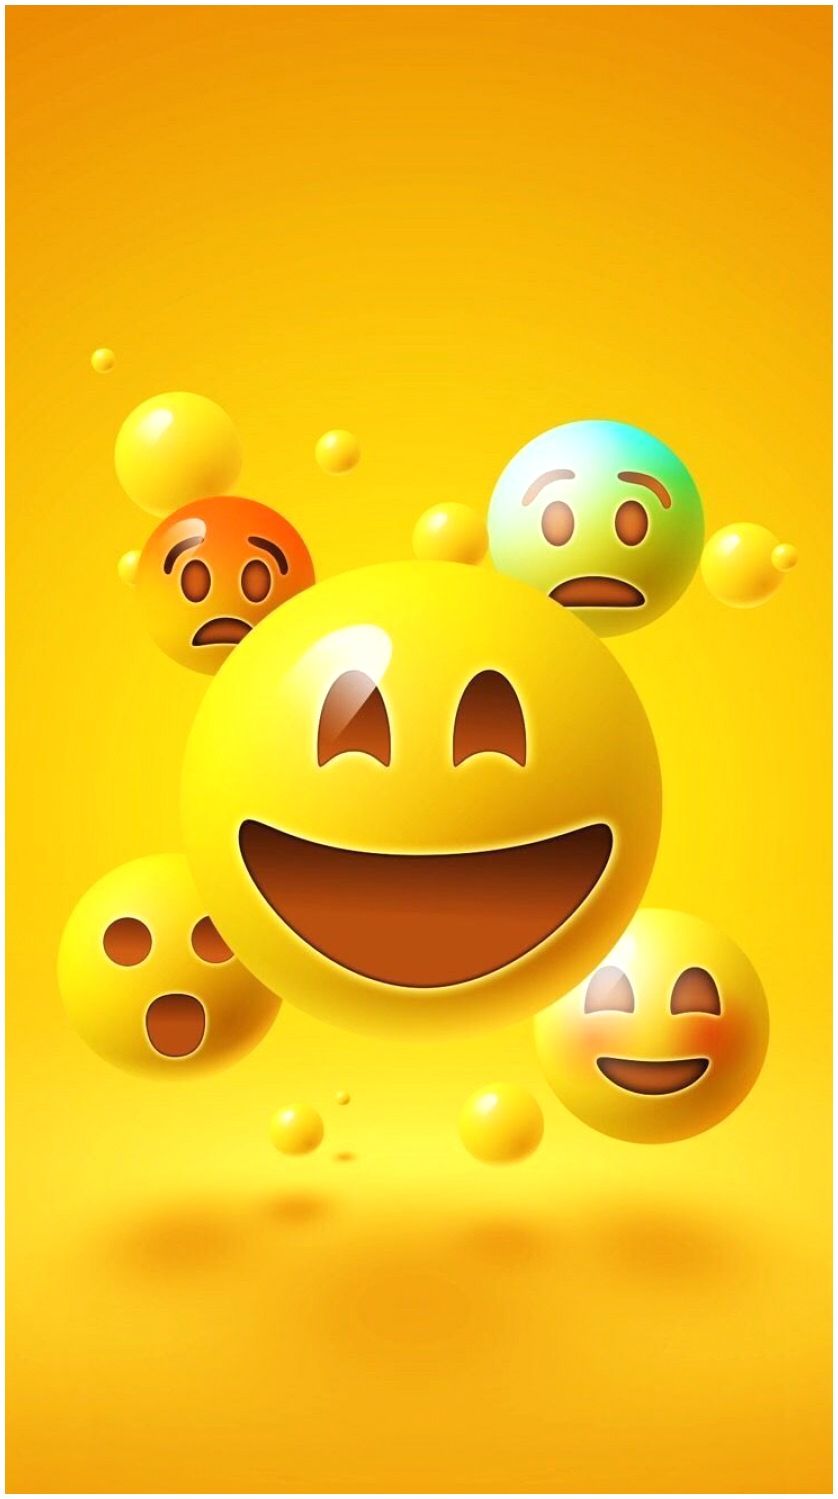 Laughing Emoji Wallpaper. Emoji wallpaper iphone, Wallpaper iphone cute, Cute emoji wallpaper